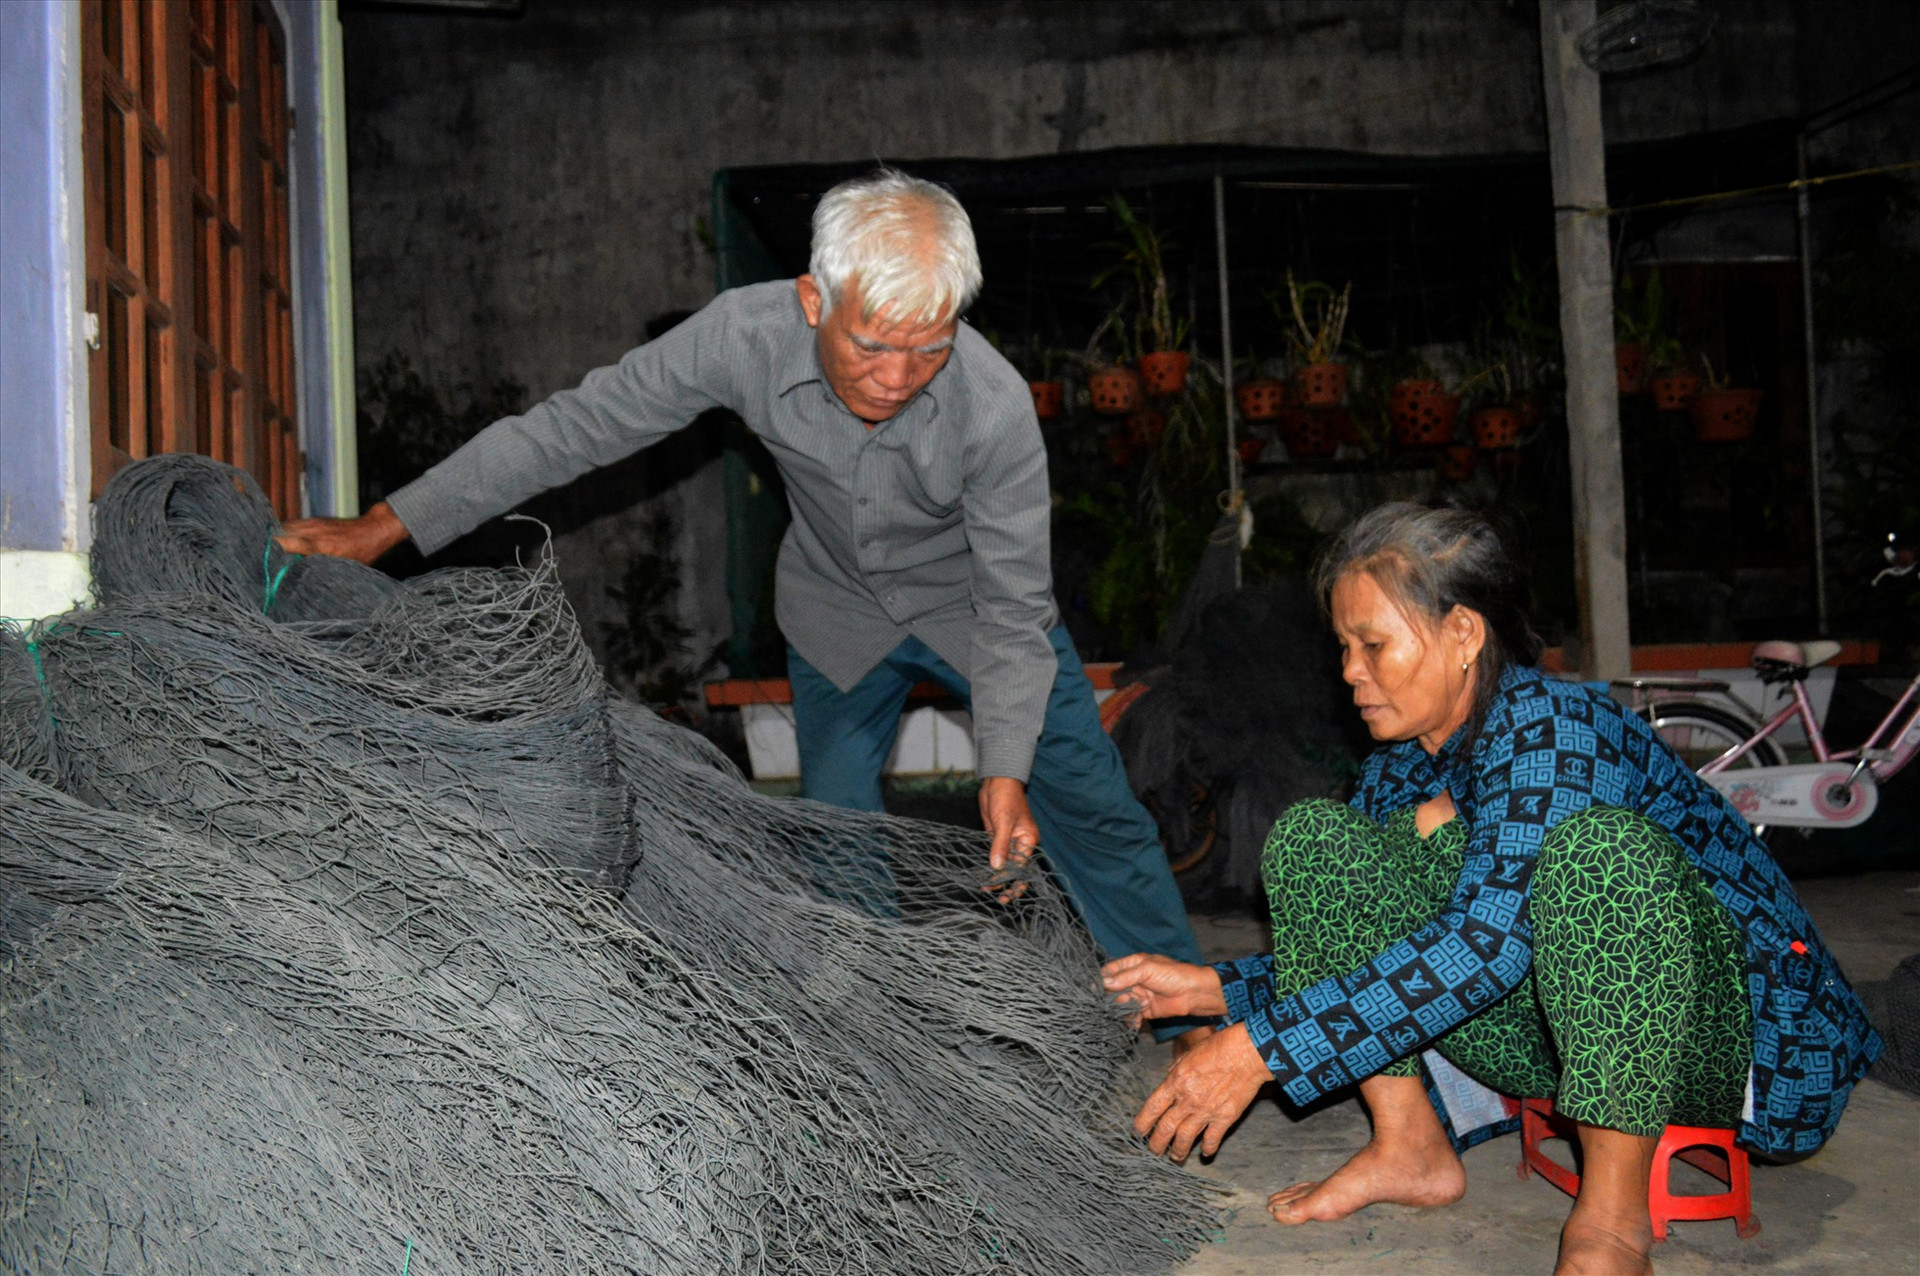 Vợ chồng bà Đinh Thị Nhanh (64 tuổi) ở thôn Tân An, xã Nghĩa An dọn đồ đạc, chuẩn bị sơ tán trước bão Noru.Gia đình bà có 3 người con mất trên biển trong cơn bão ChanChu năm 2006.